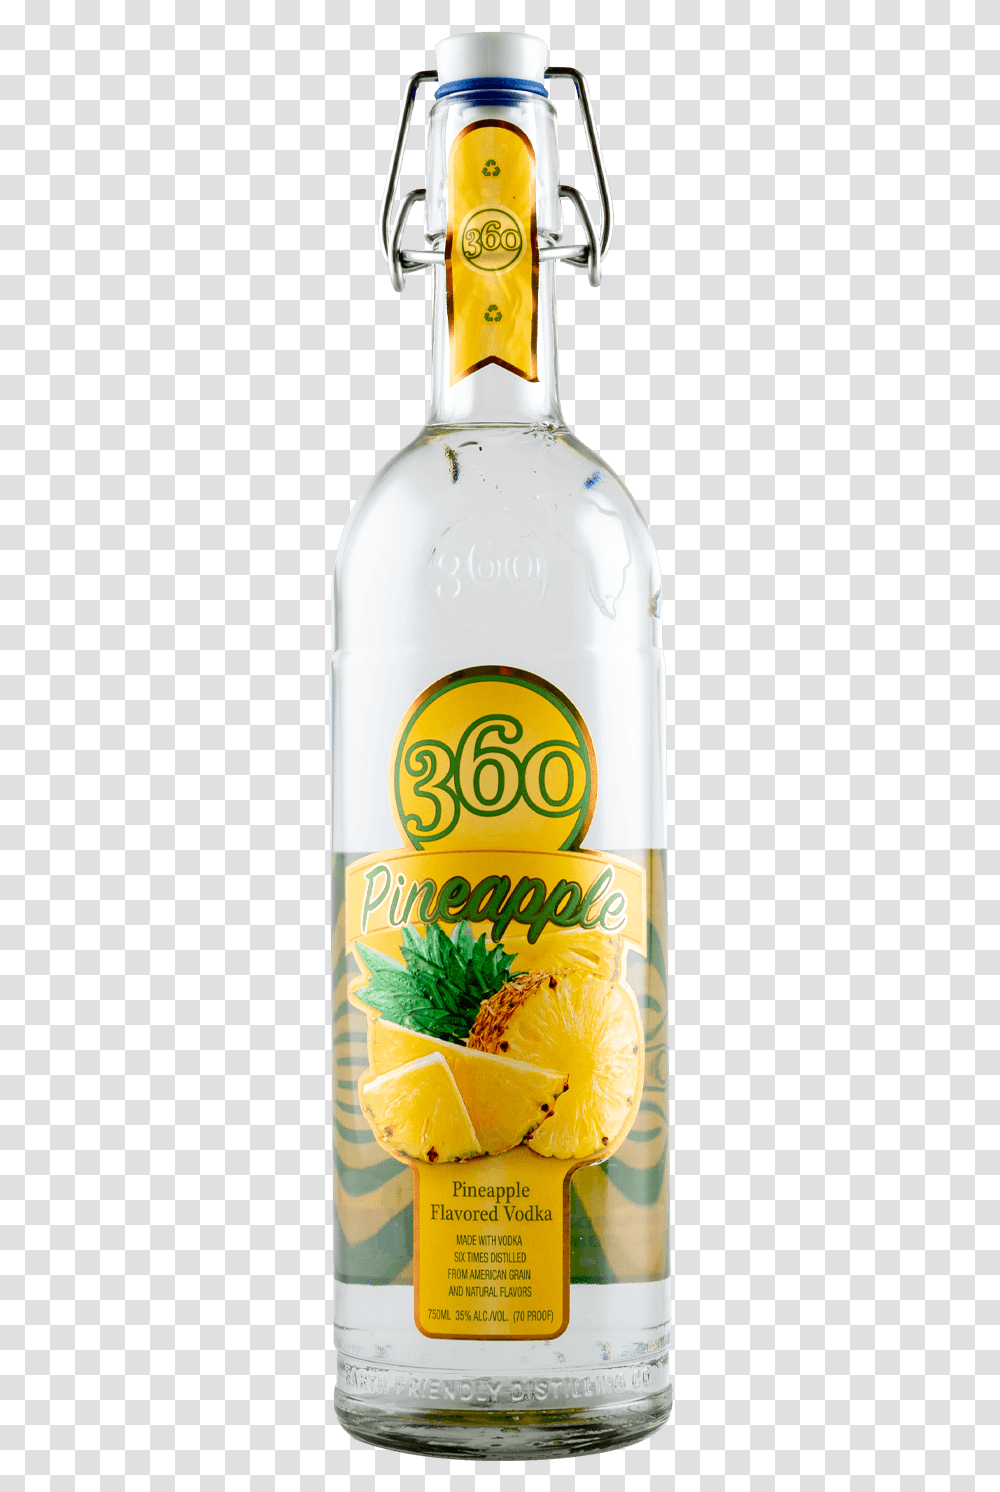 Pineapple Flavored Vodka, Bottle, Beverage, Drink, Cosmetics Transparent Png